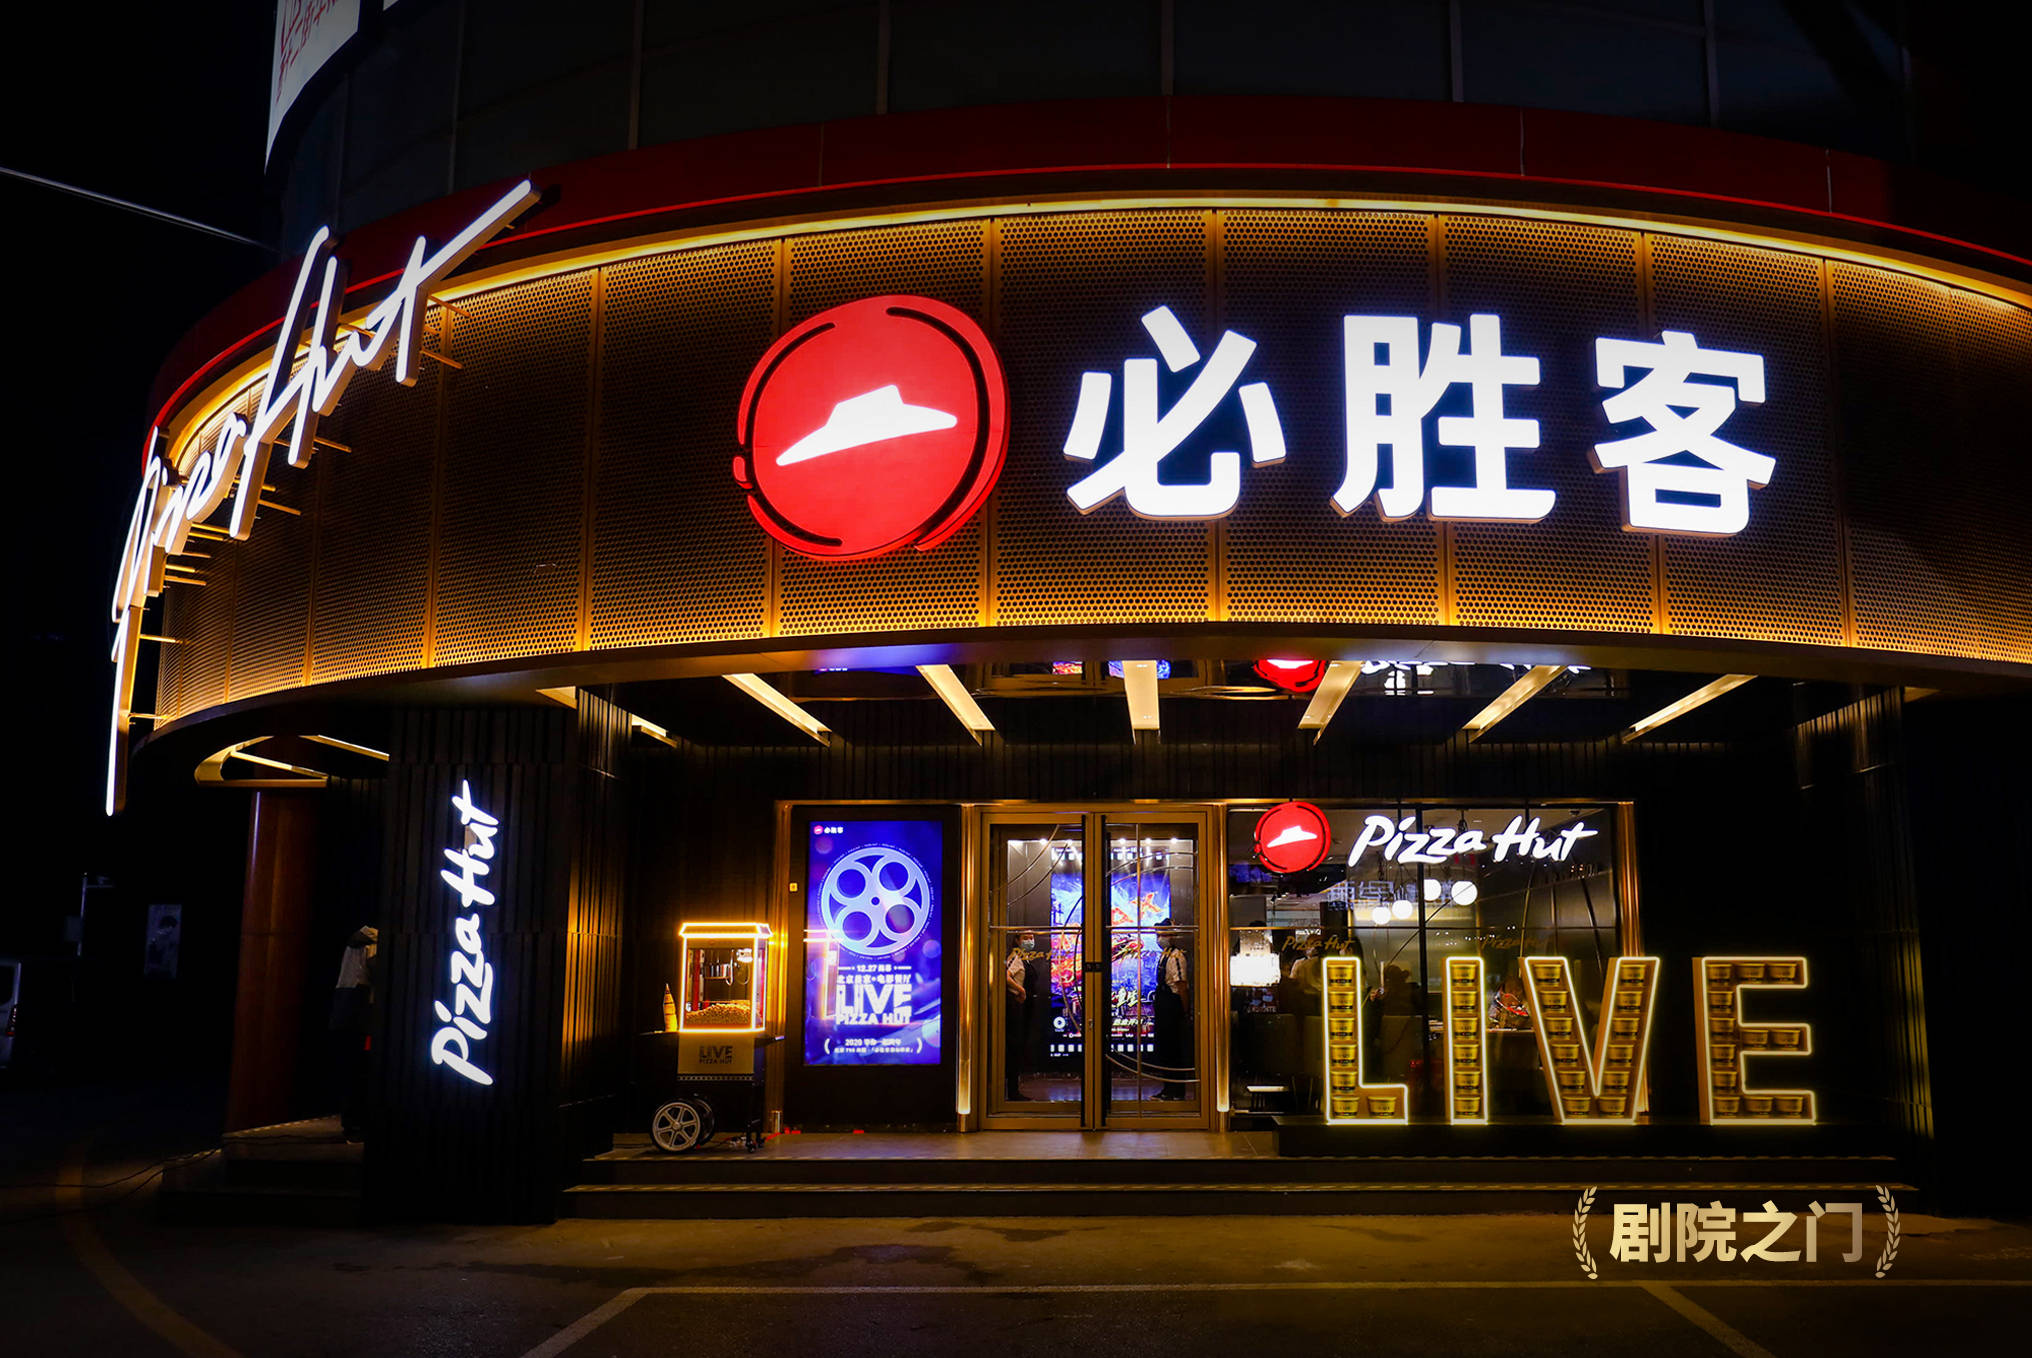 必胜客首家电影主题餐厅北京揭幕,打造年轻人全新社交空间